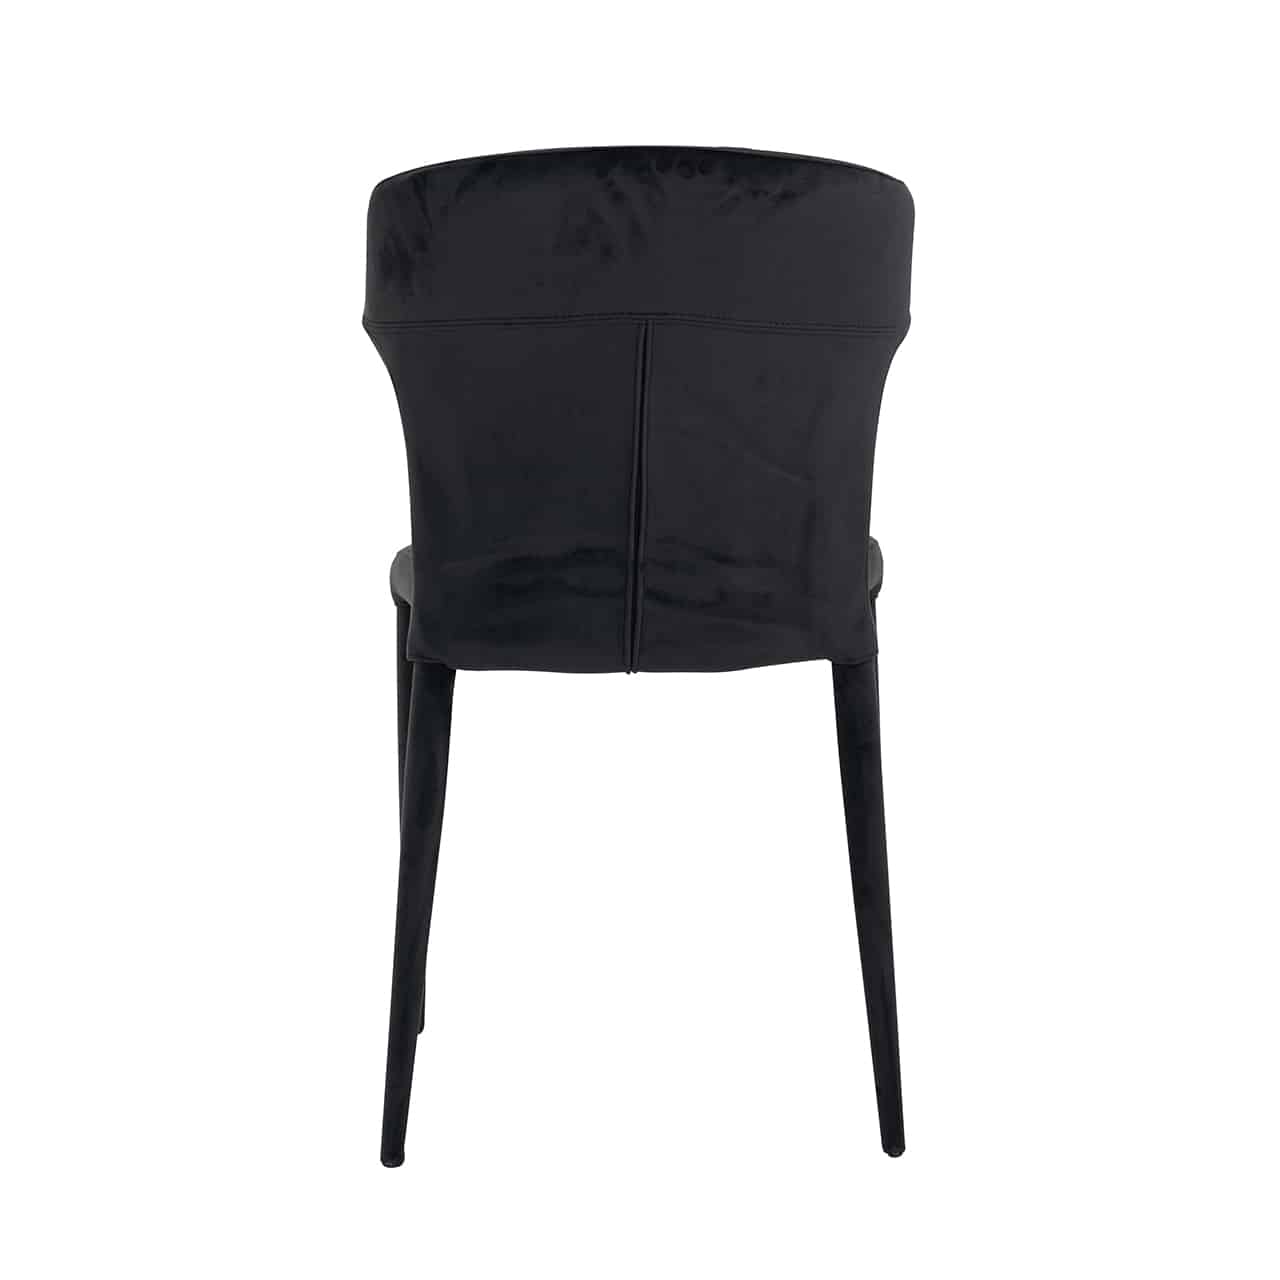 PIPER chair black